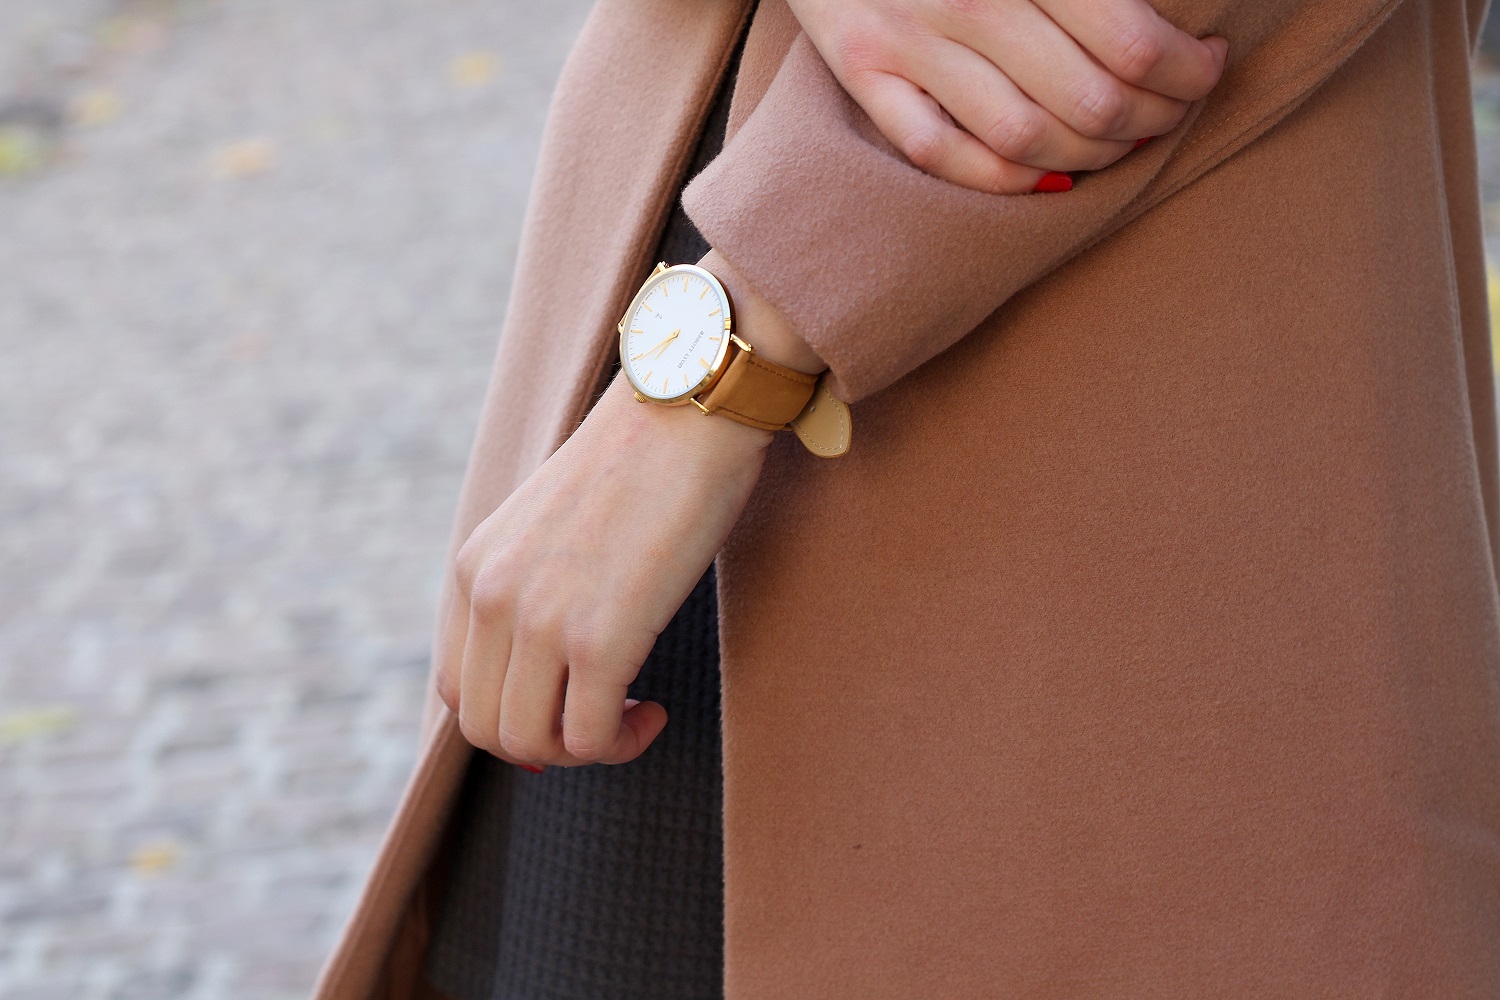 peexo fashion blogger wearing abbott lyon watch